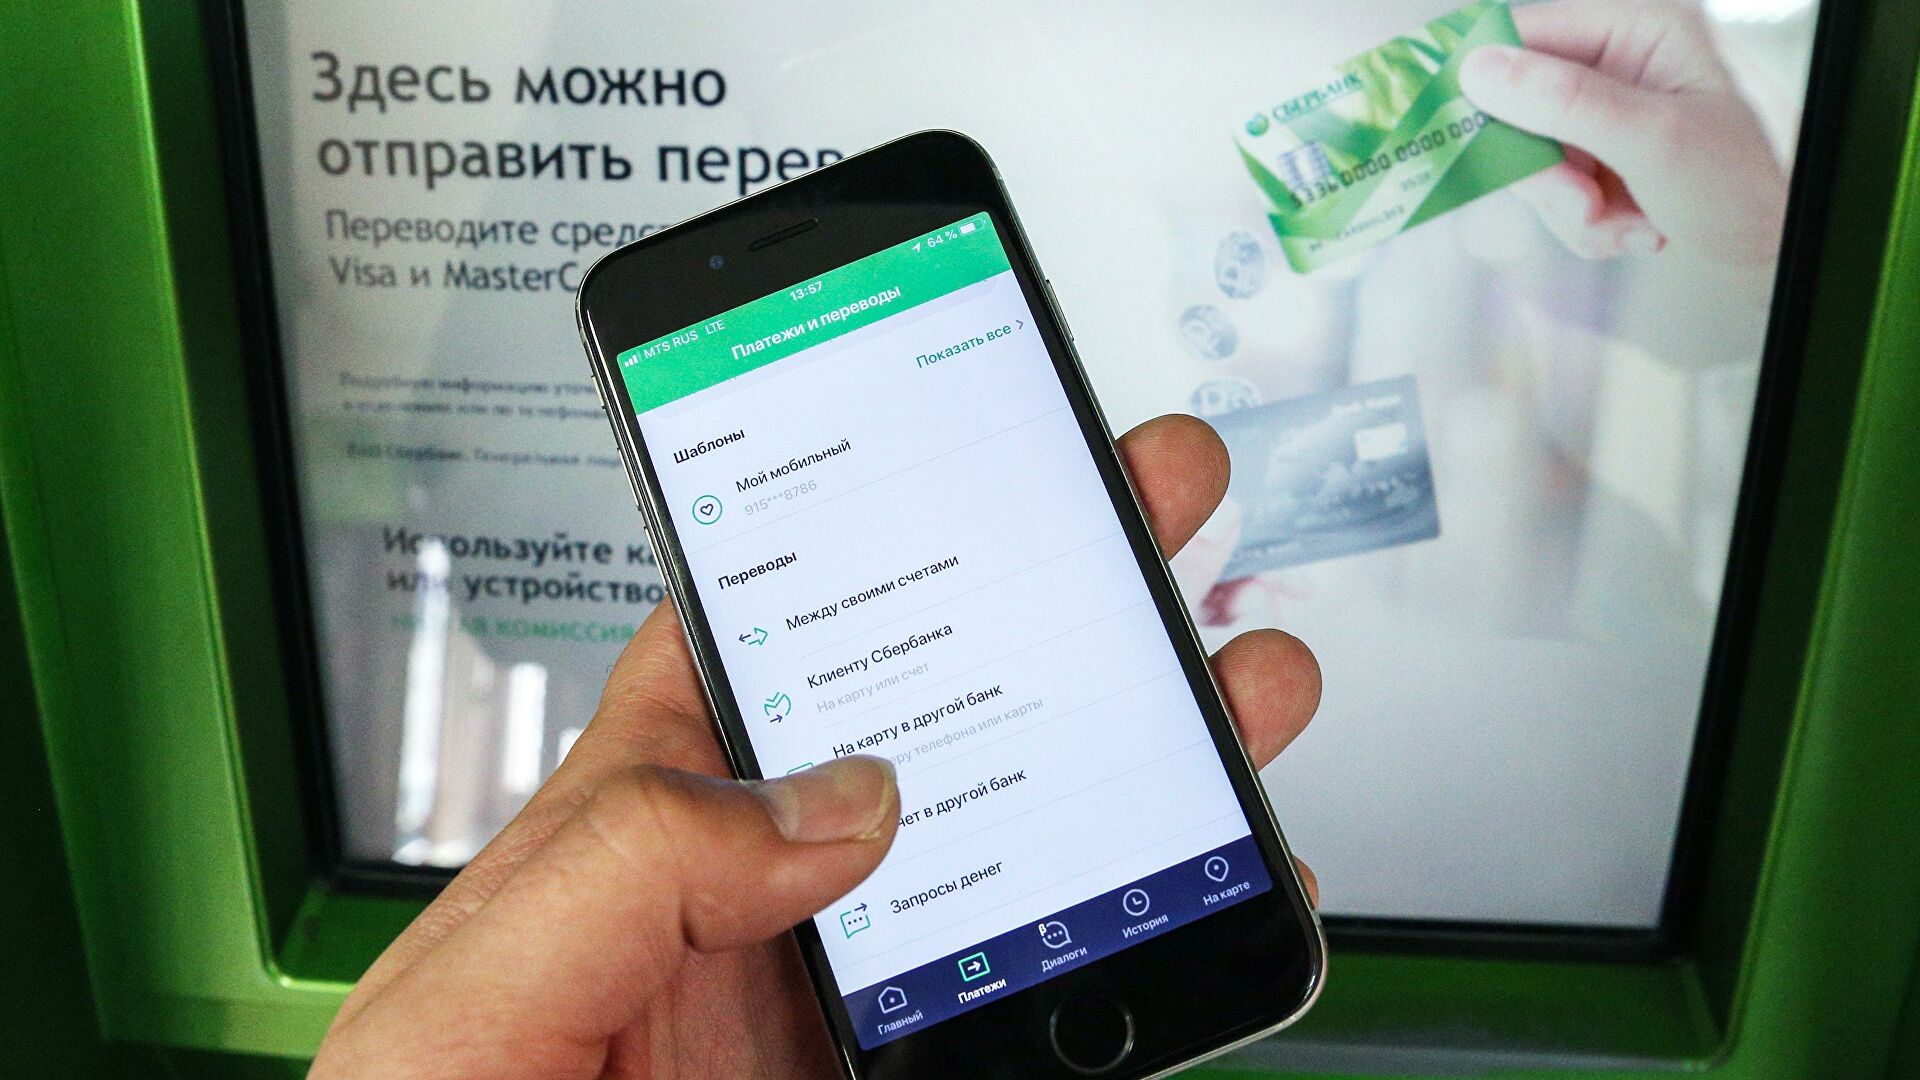 Мобильное приложение Сбербанка стало недоступным для скачивания в Google Play